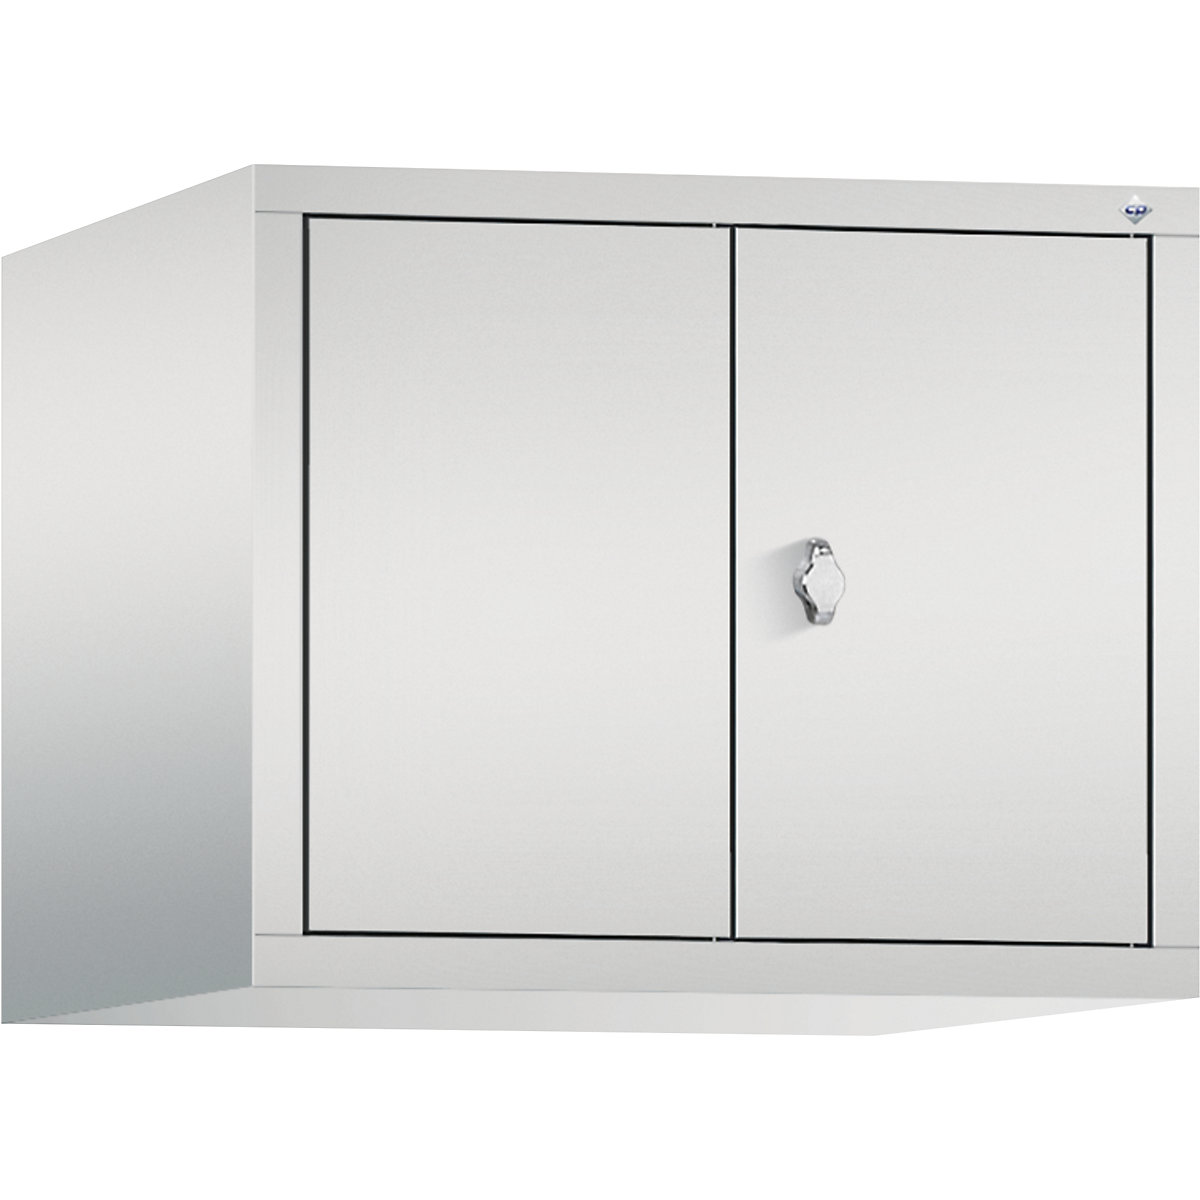 C+P – Altillo CLASSIC, puertas batientes que cierran al ras entre sí, 2 compartimentos, anchura de compartimento 300 mm, gris luminoso